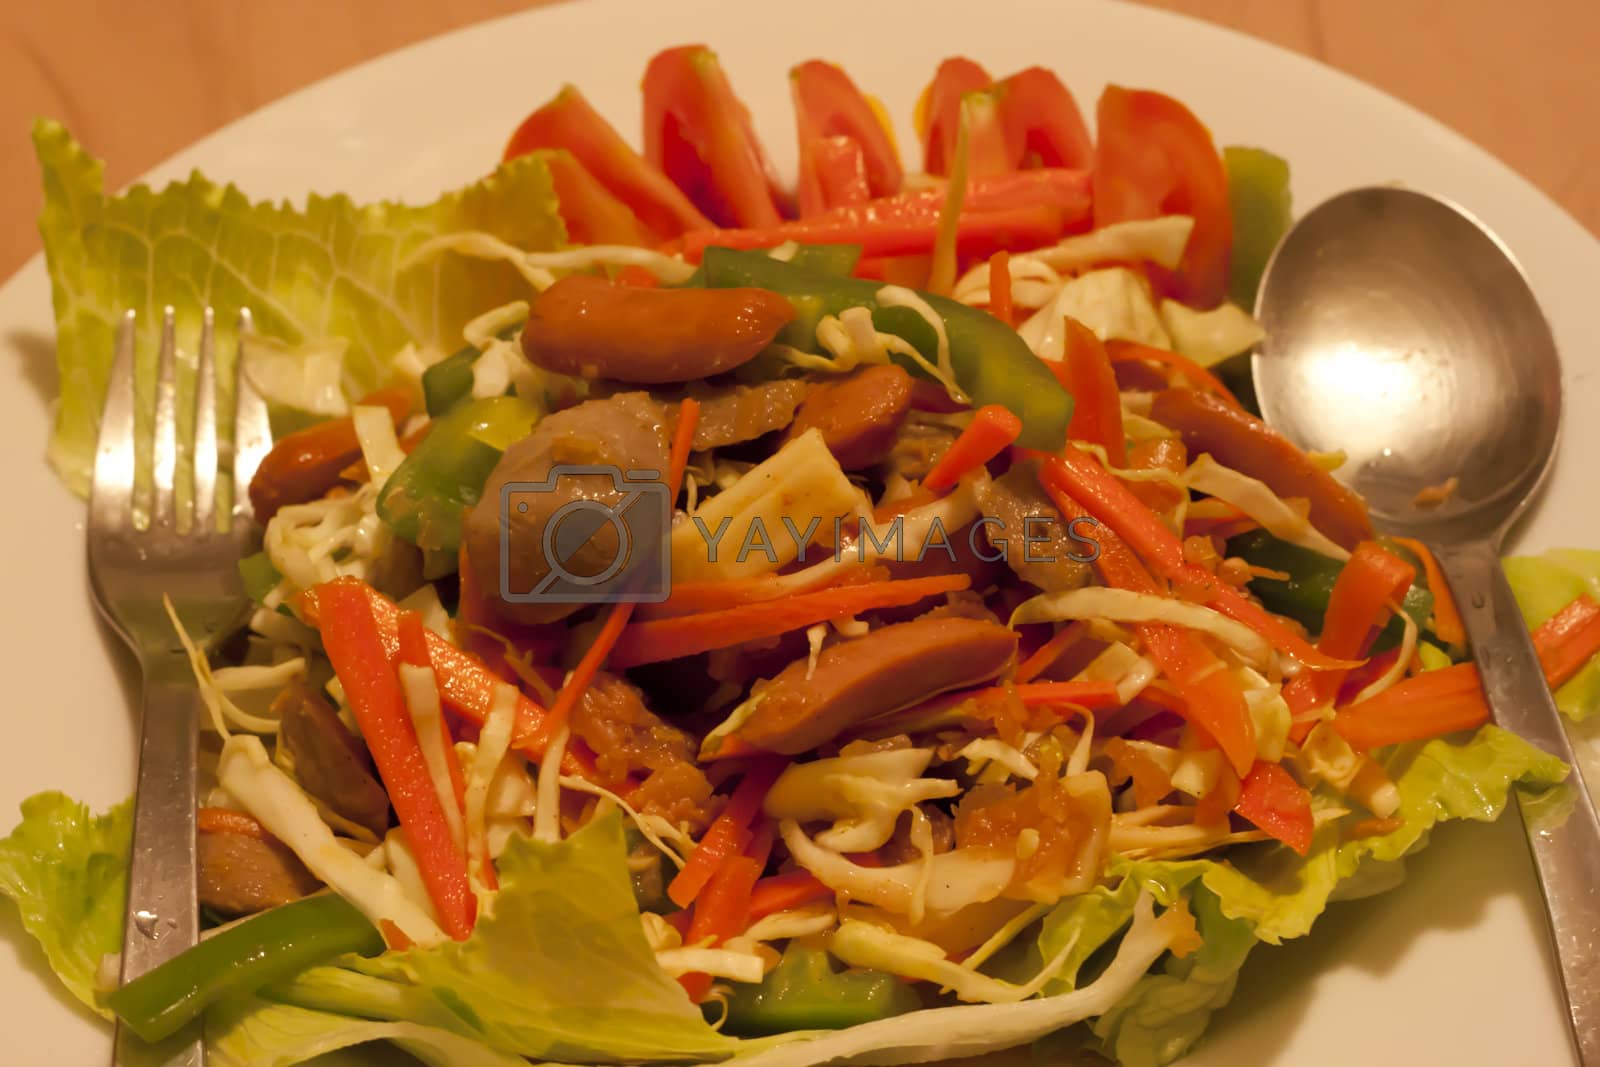 Royalty free image of Thai dressed spicy salad by teerawat_camt